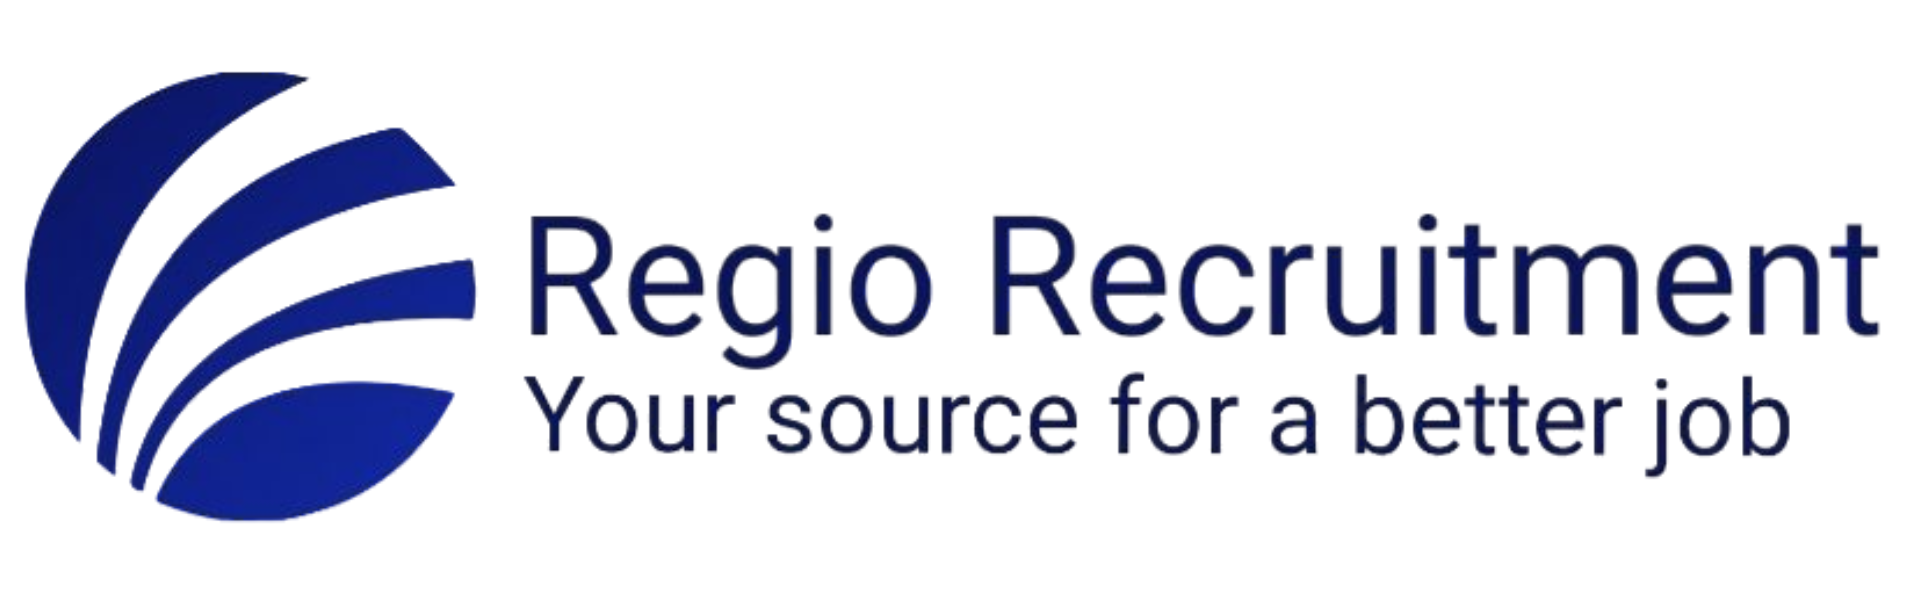 Regio Recruitment